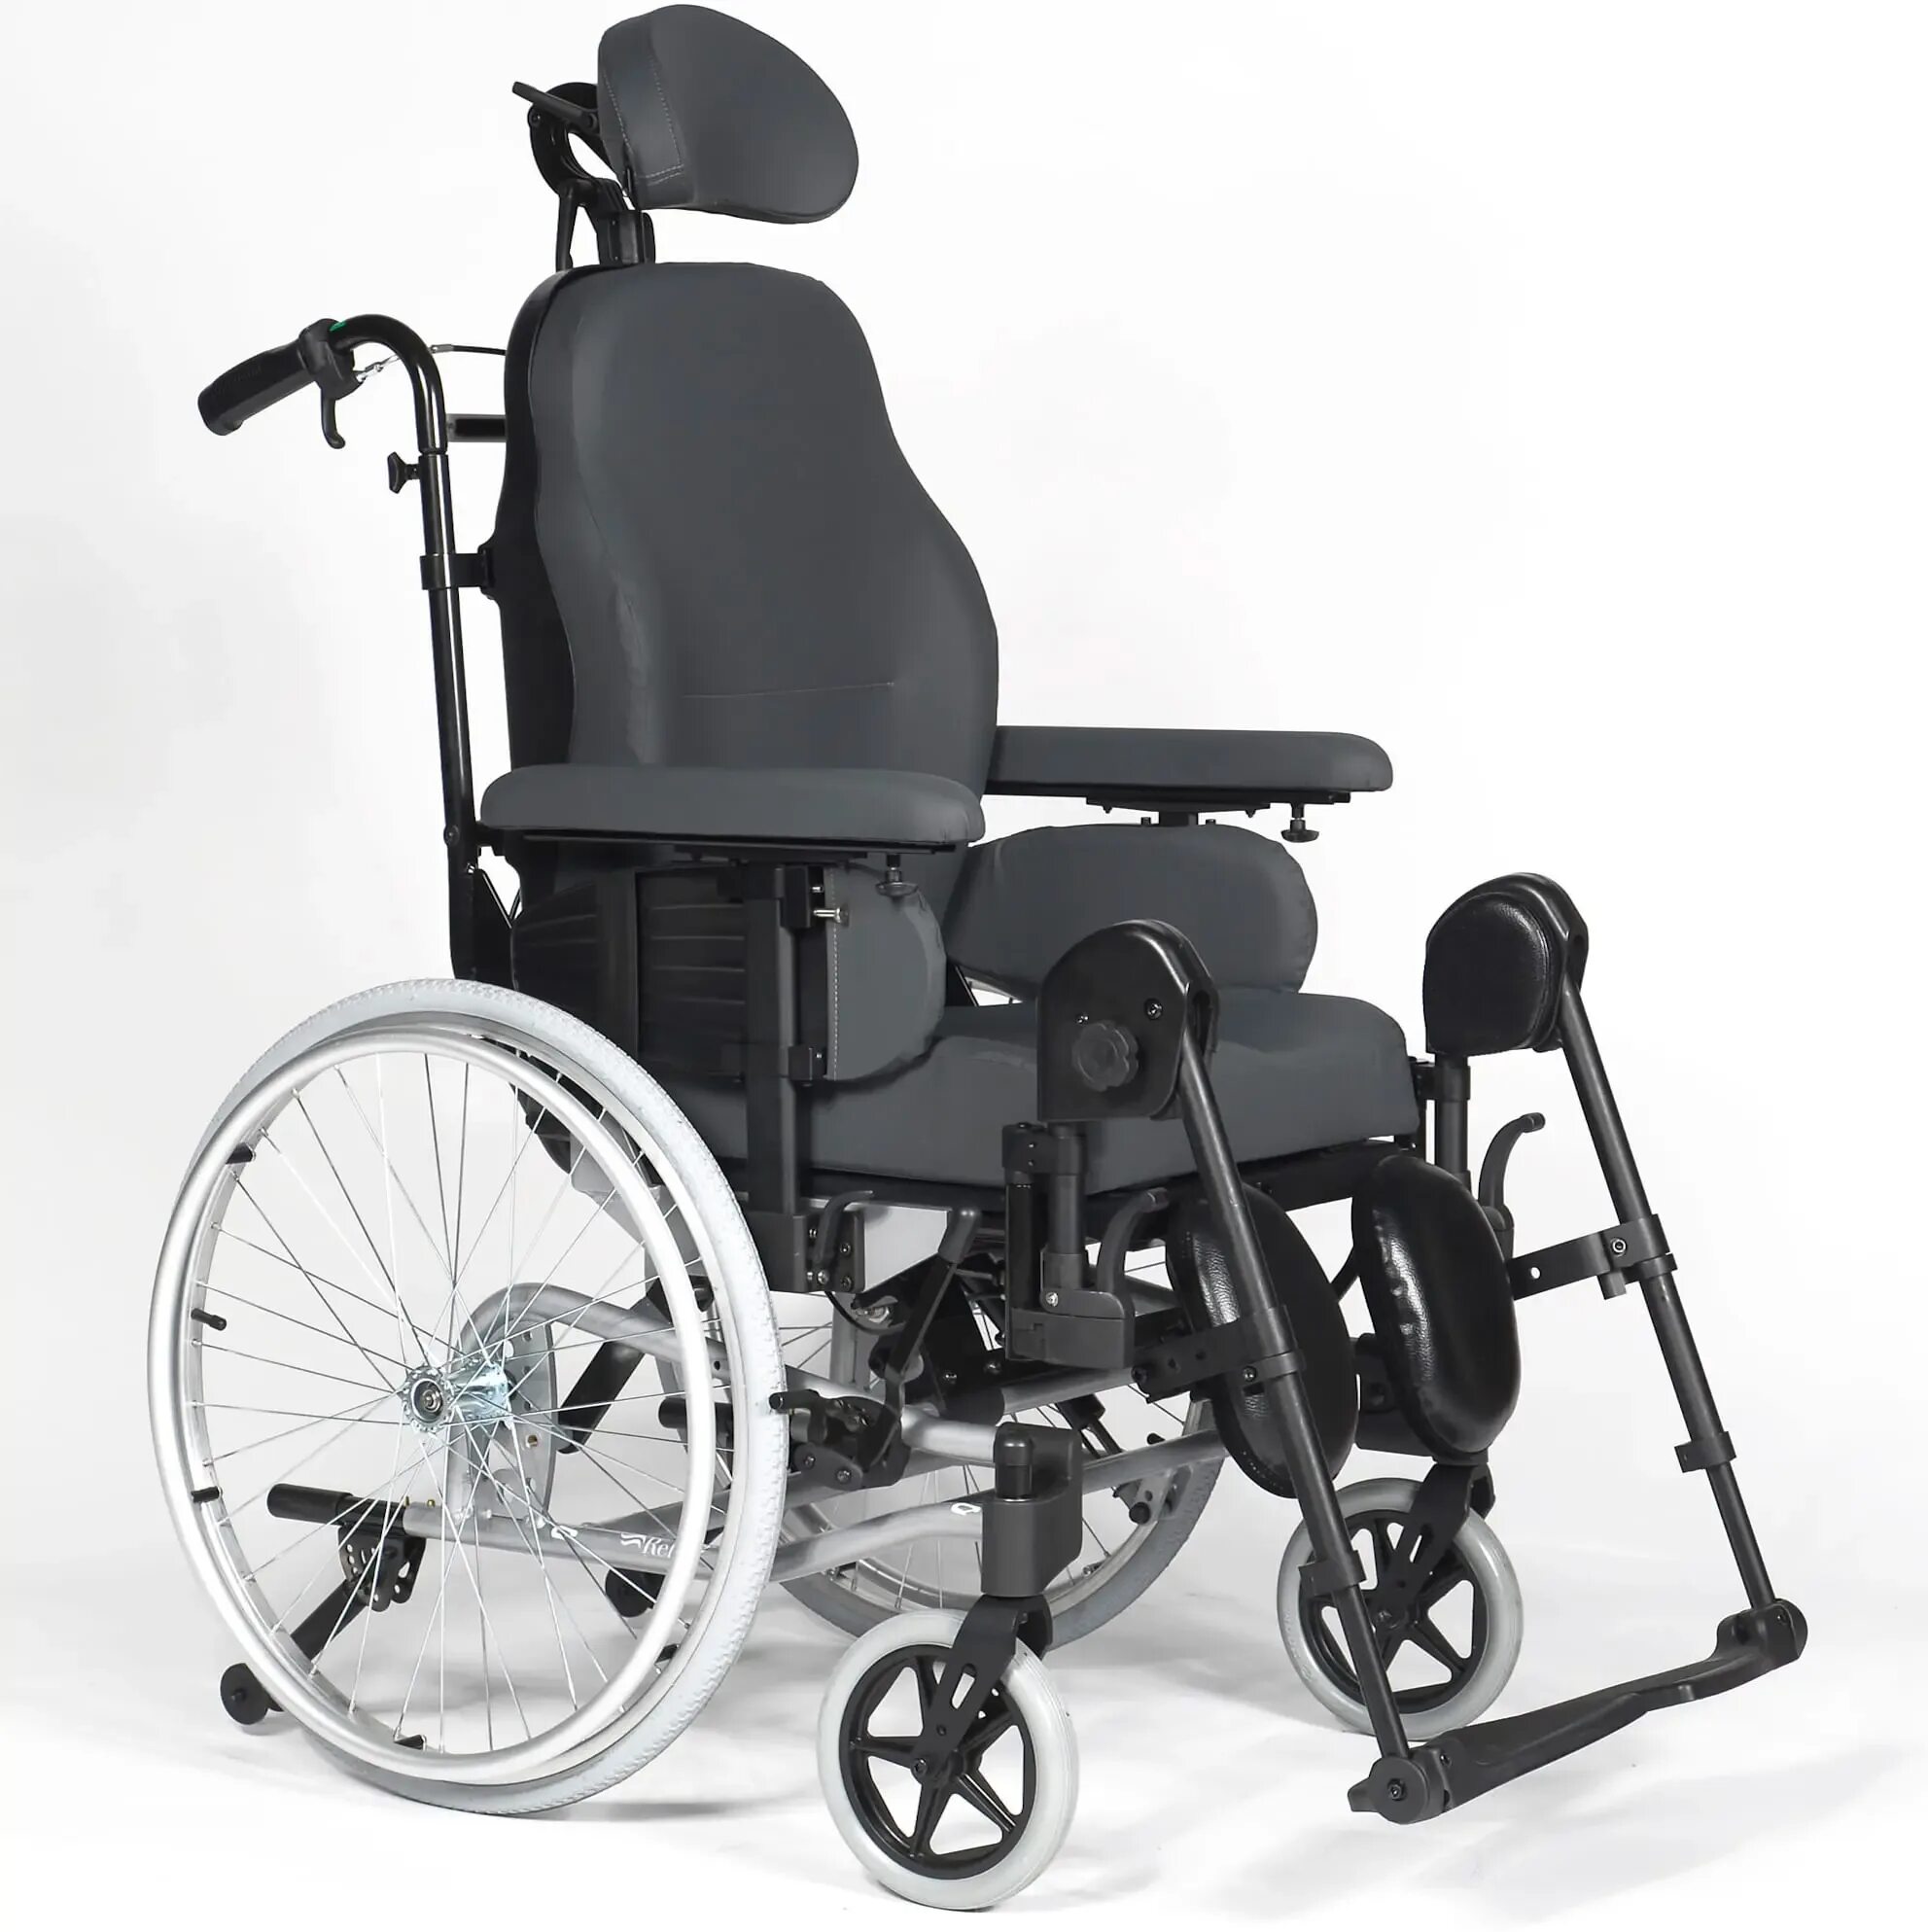 Где можно взять инвалидную коляску. Инвалидная коляска Breezy 250. Инвалидная коляска Breezy Premium ly 250. Кресло-коляска Breezy 710 Style p. Evolution 8 инвалидная коляска.